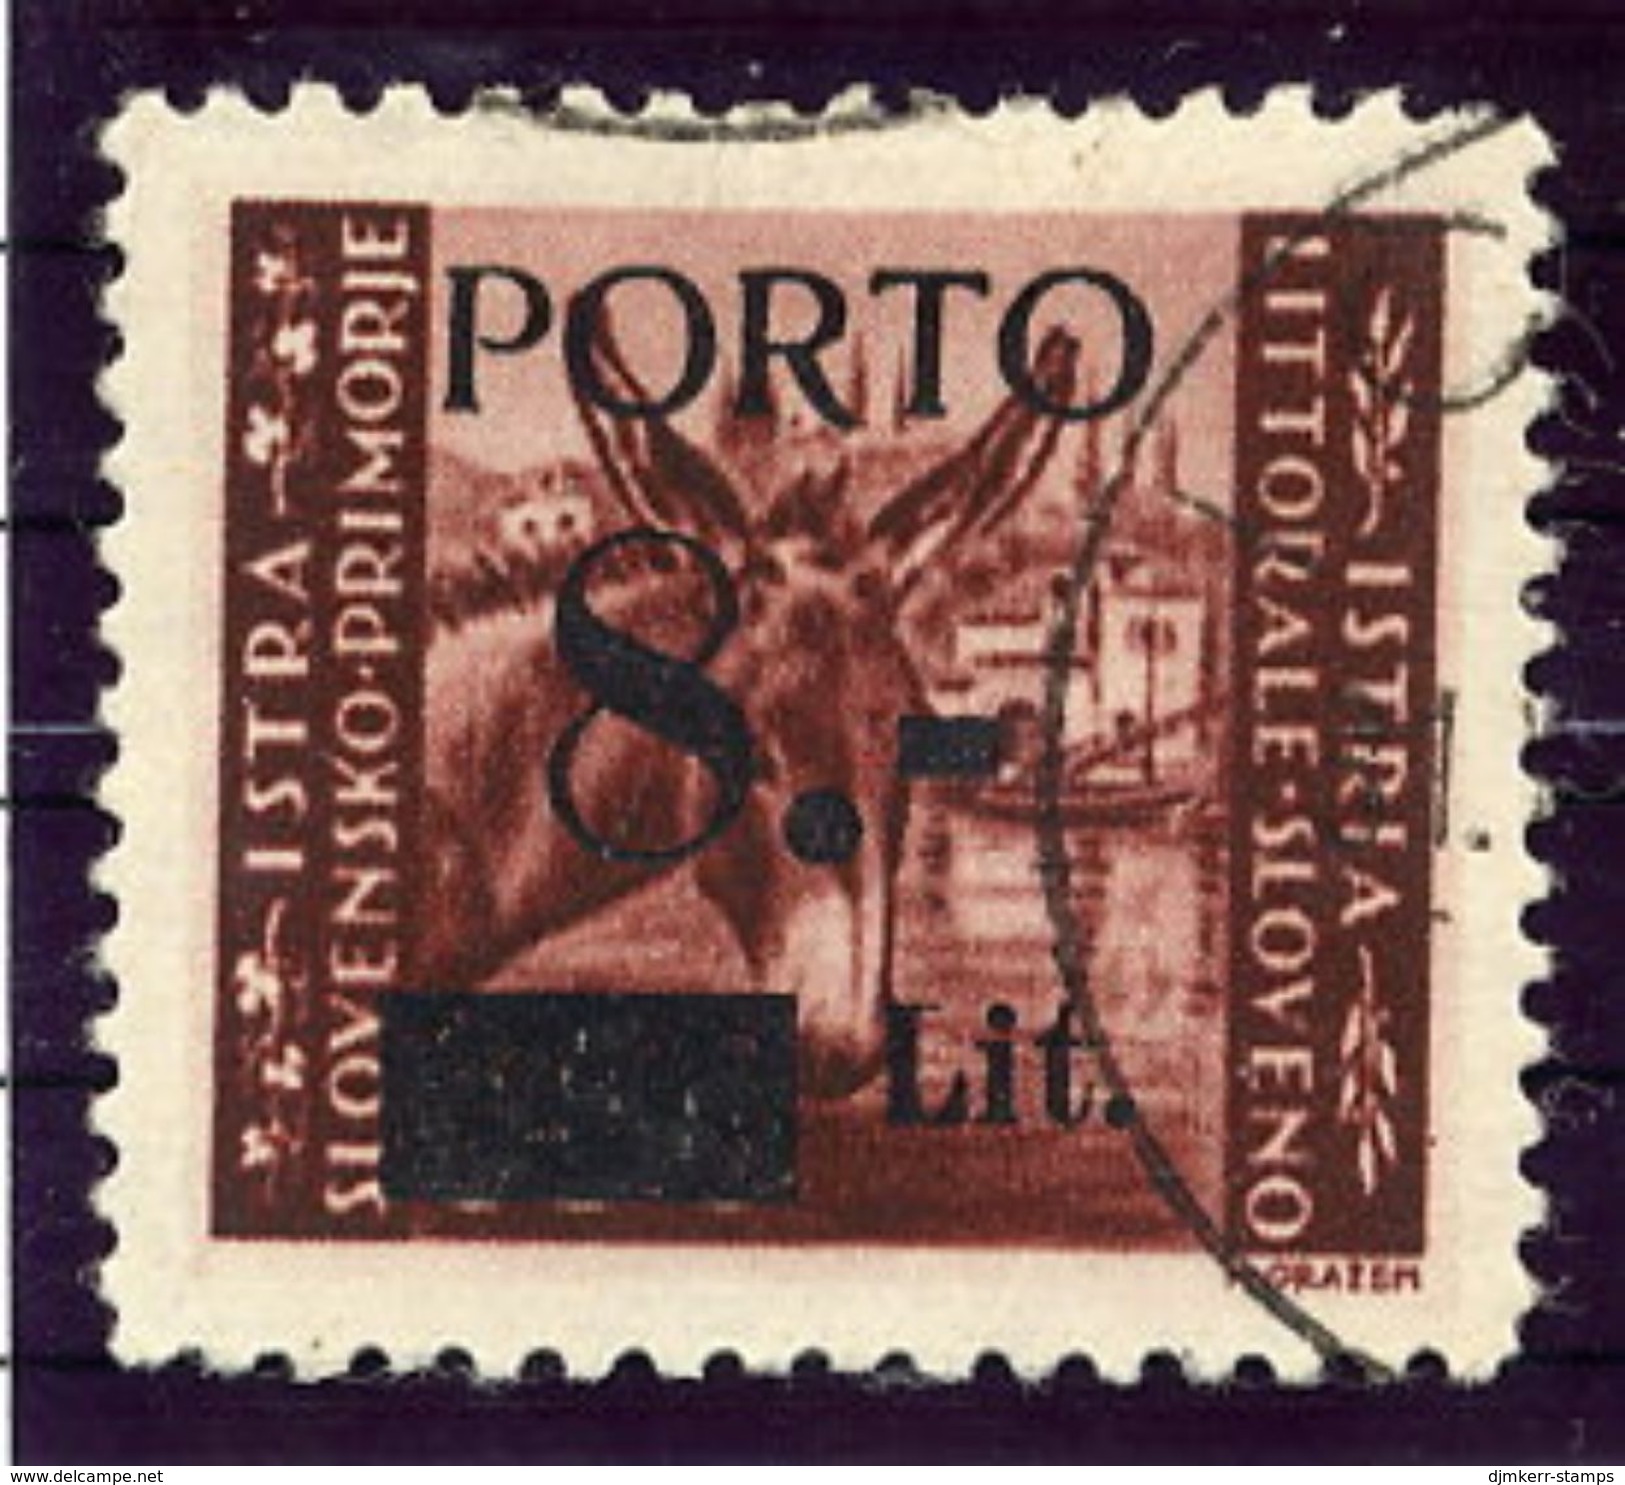 YUGOSLAVIA (ISTRIA) 1945 Postage Due 8 L. Surcharge On 0.50 L.  Used.  Michel Porto 5 - Segnatasse